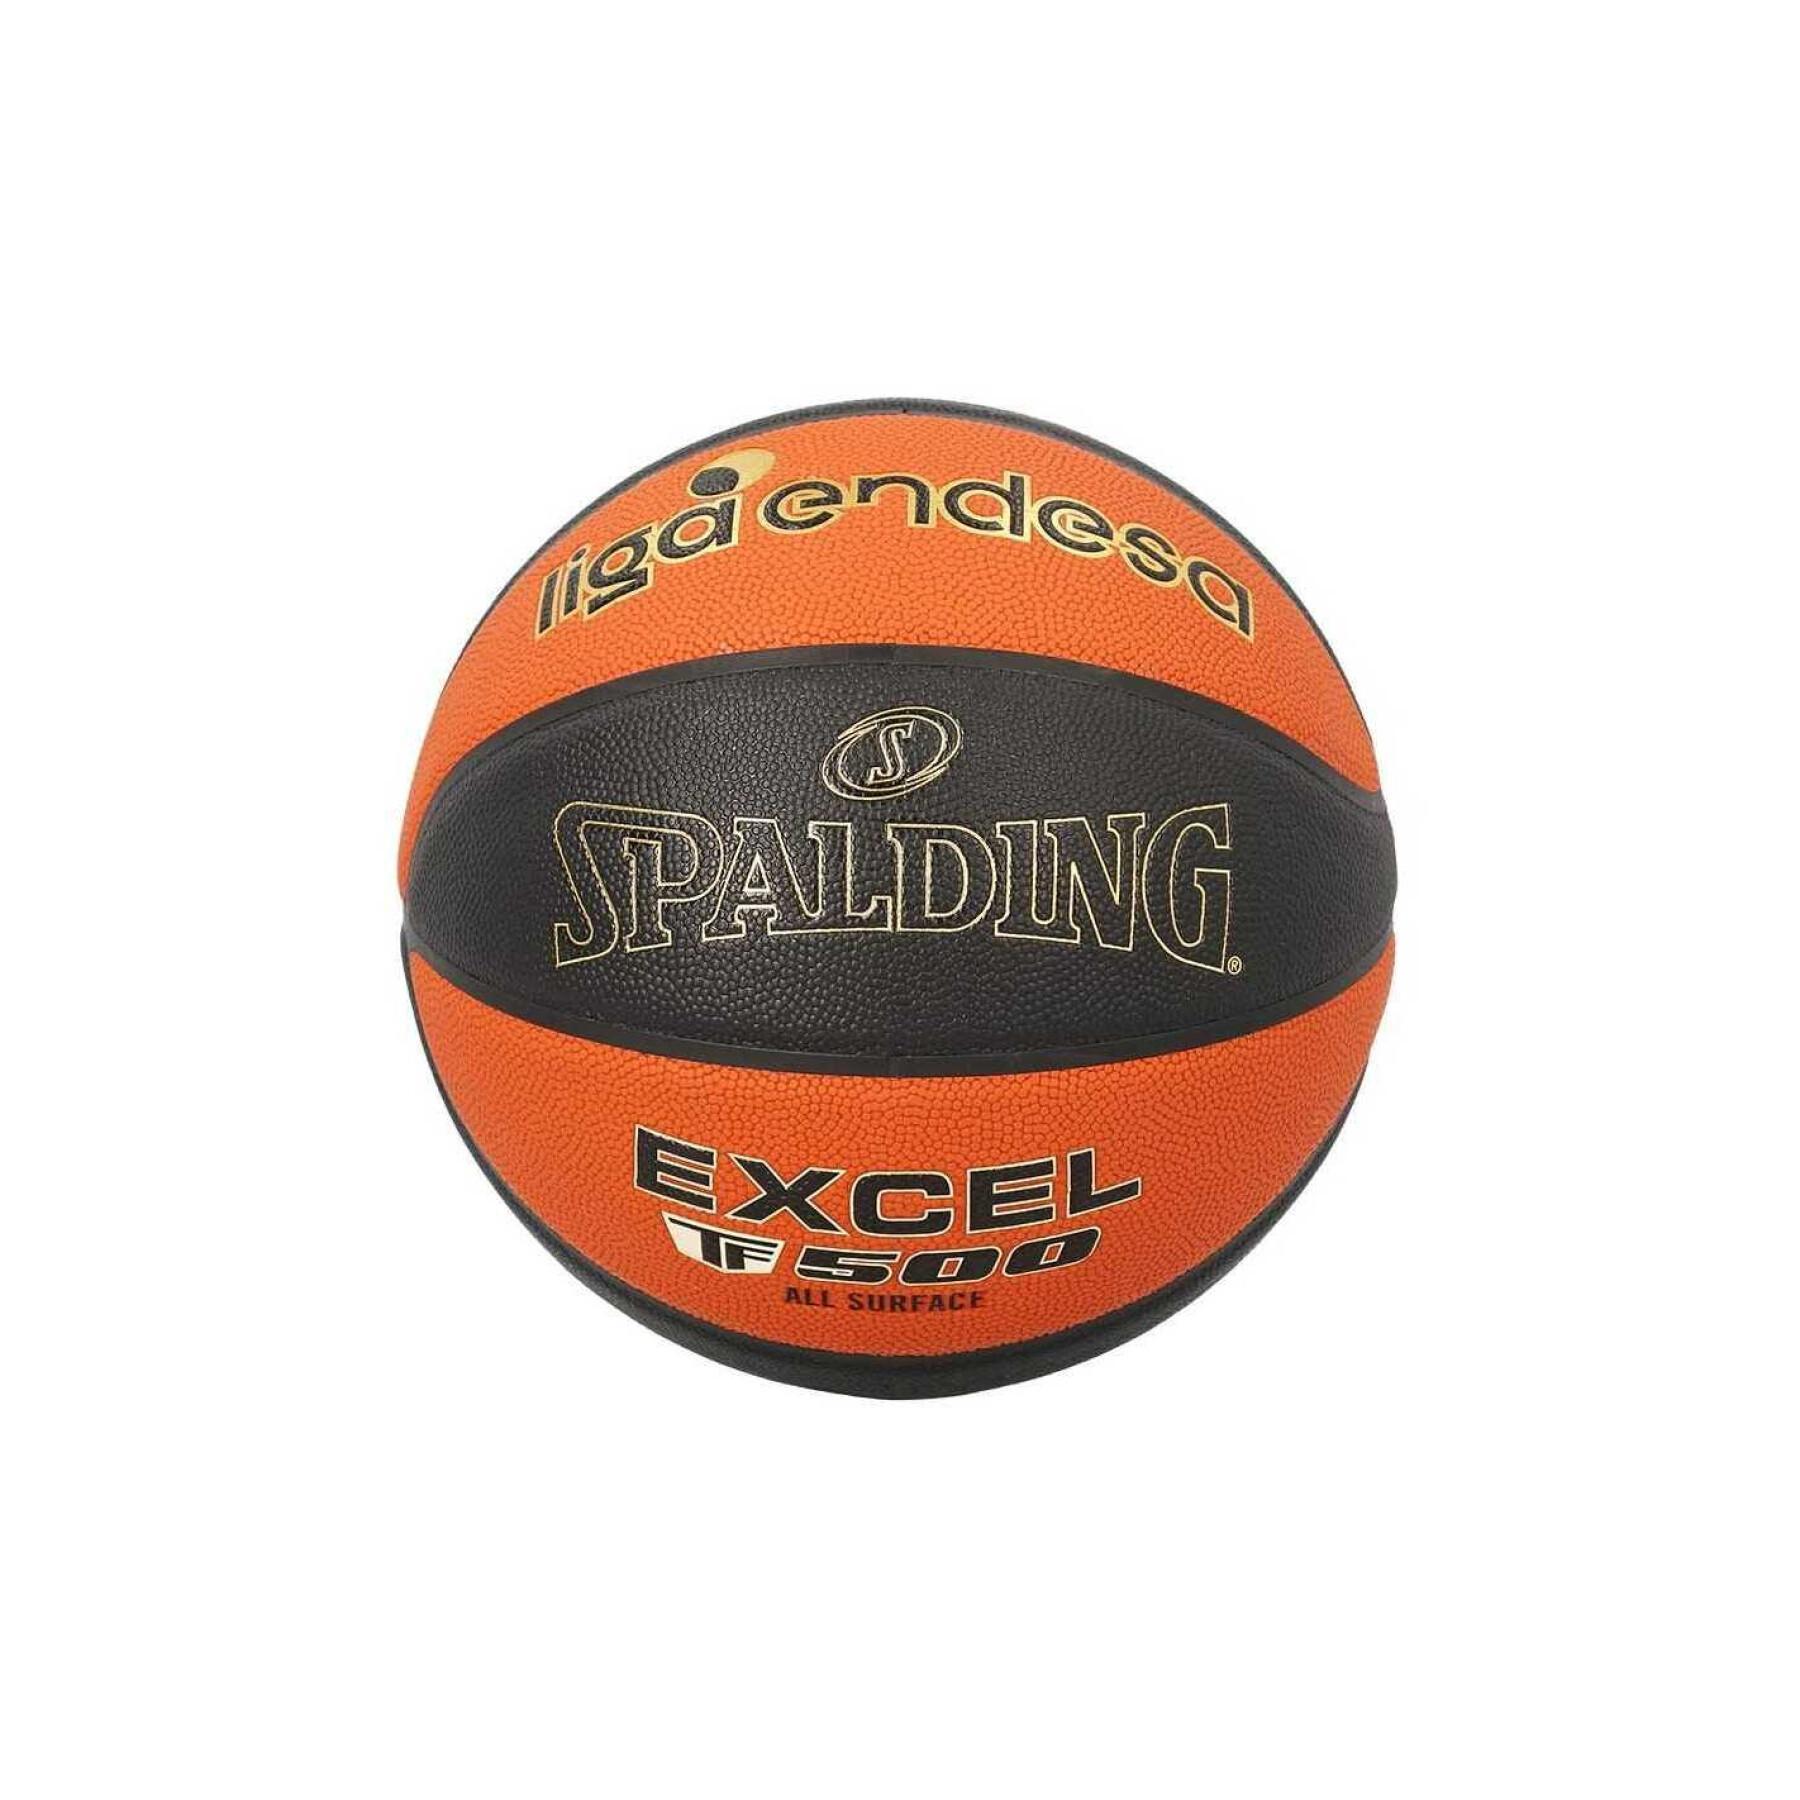 Ballong Spalding Excel TF-500 Sz7 Composite ACB